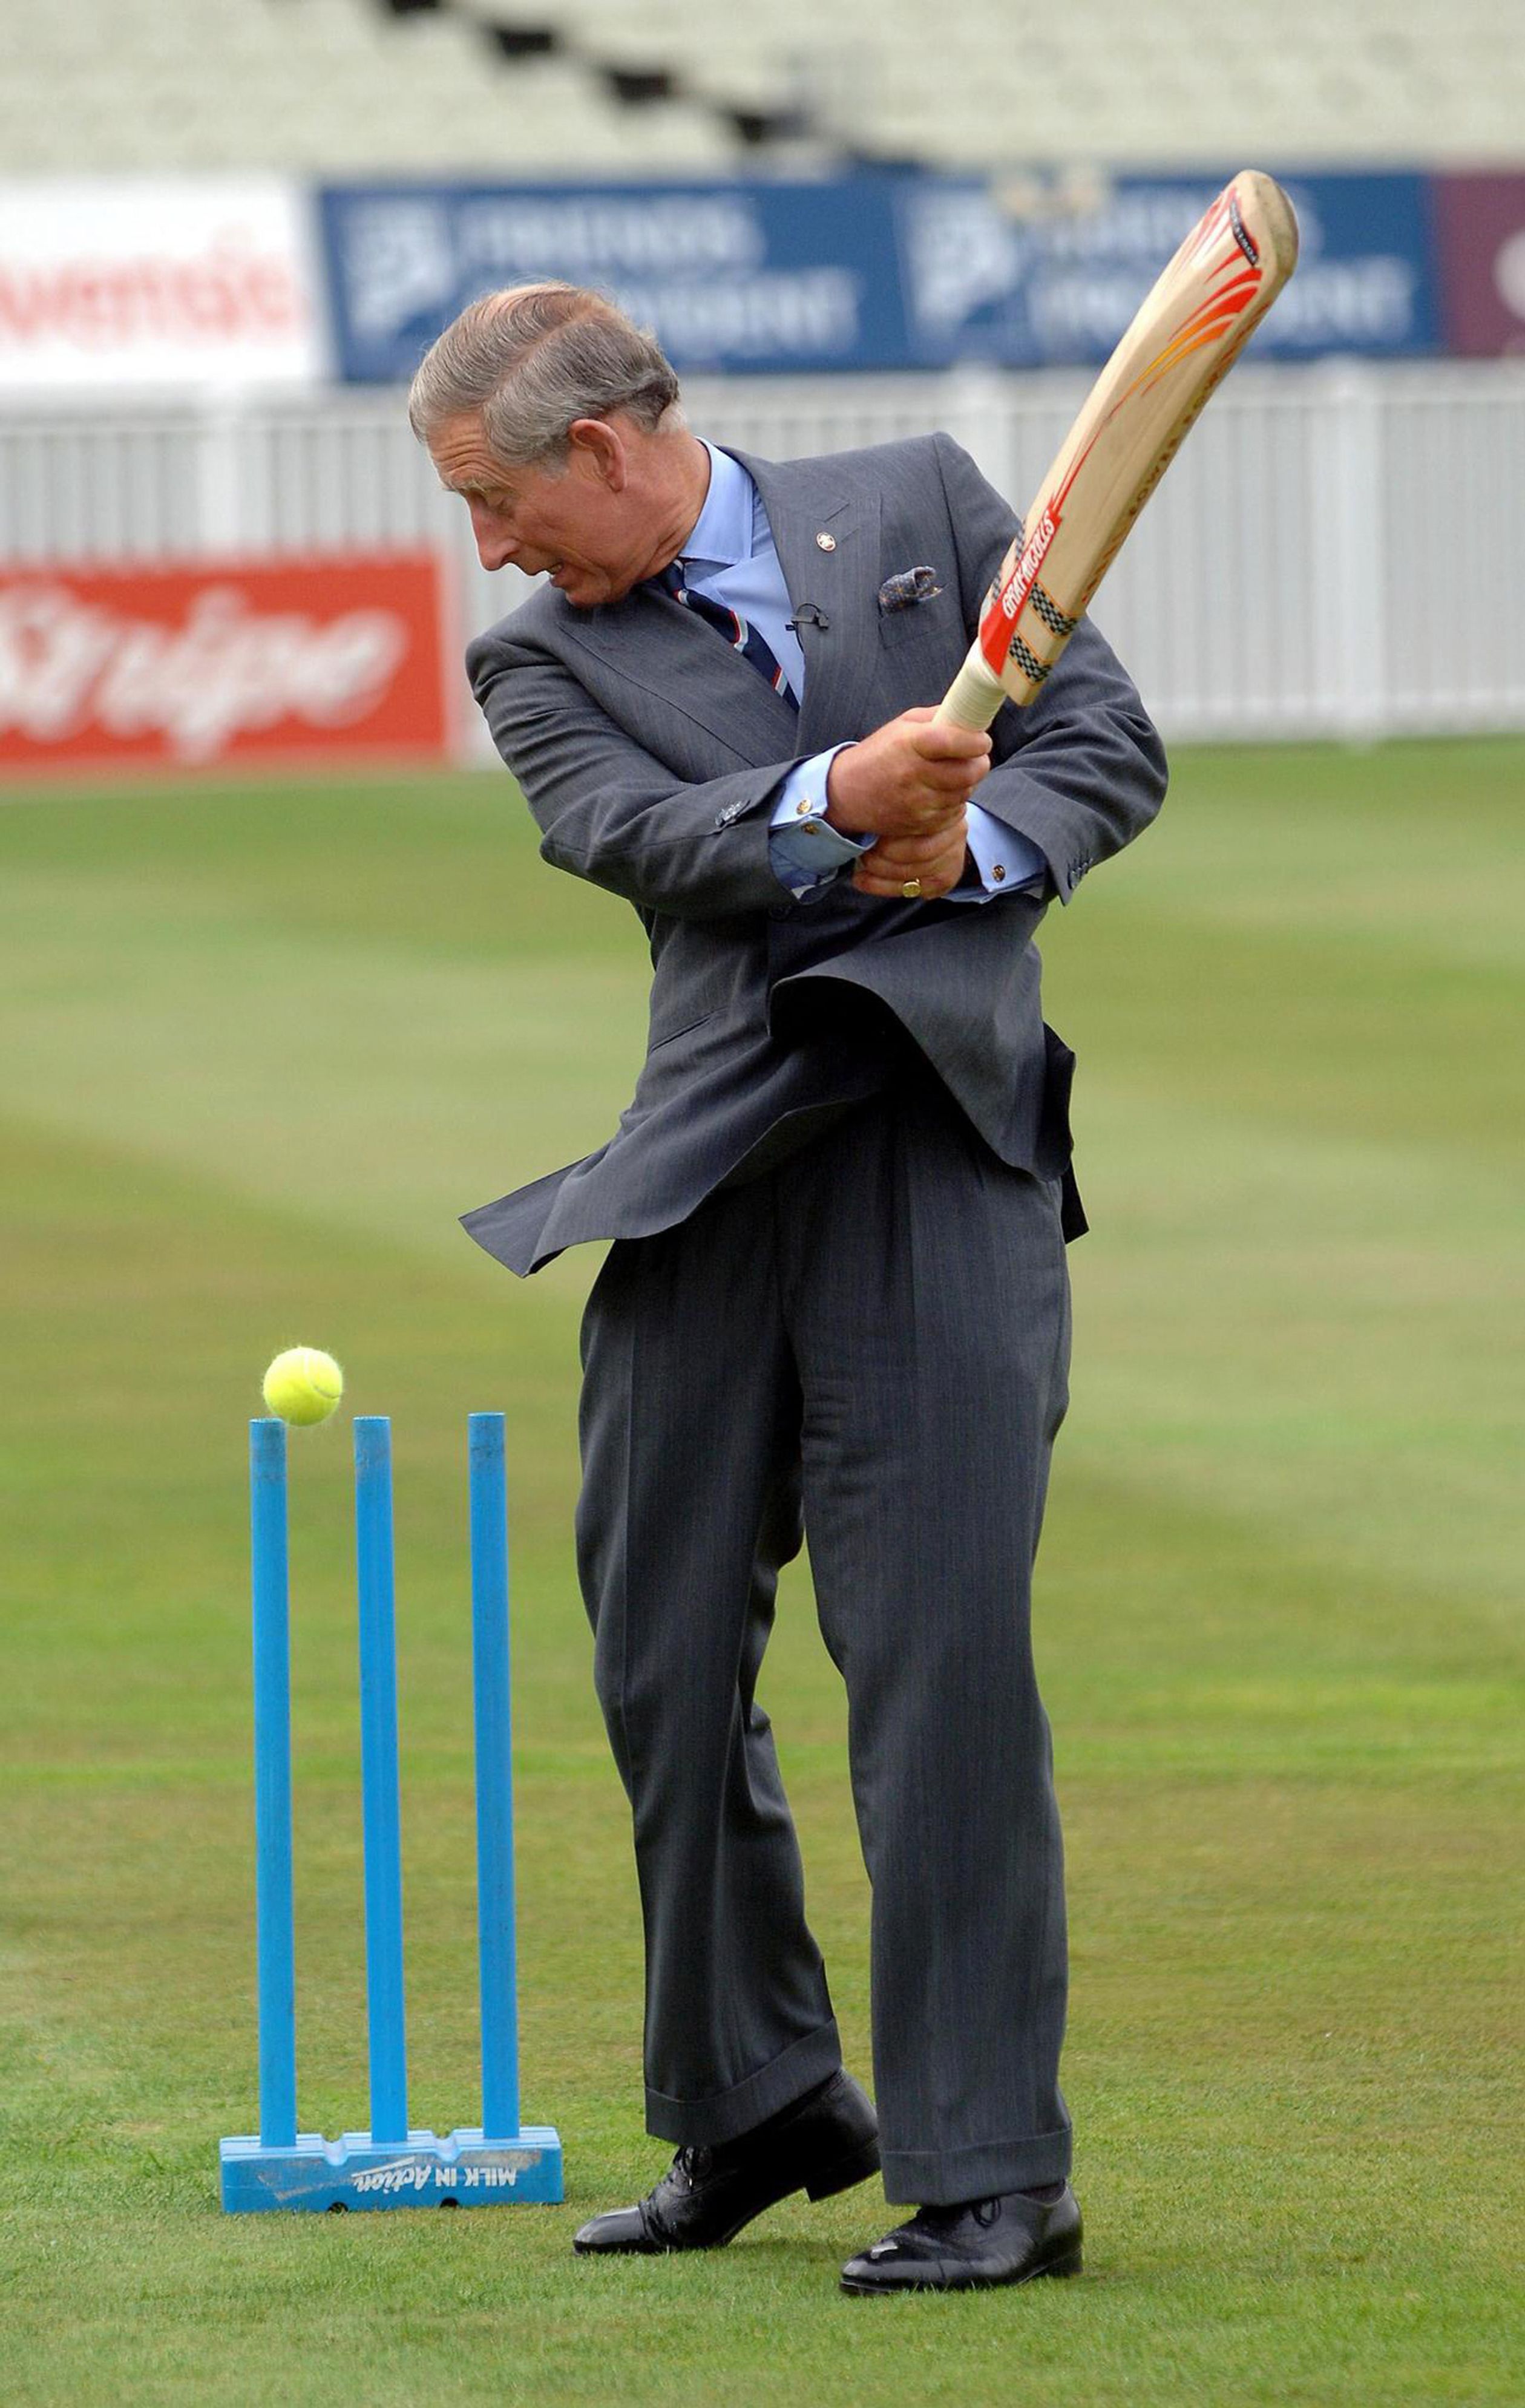 2006: Charles tijdens een bezoek aan het Prince's Trust 12 week cricketing programme.